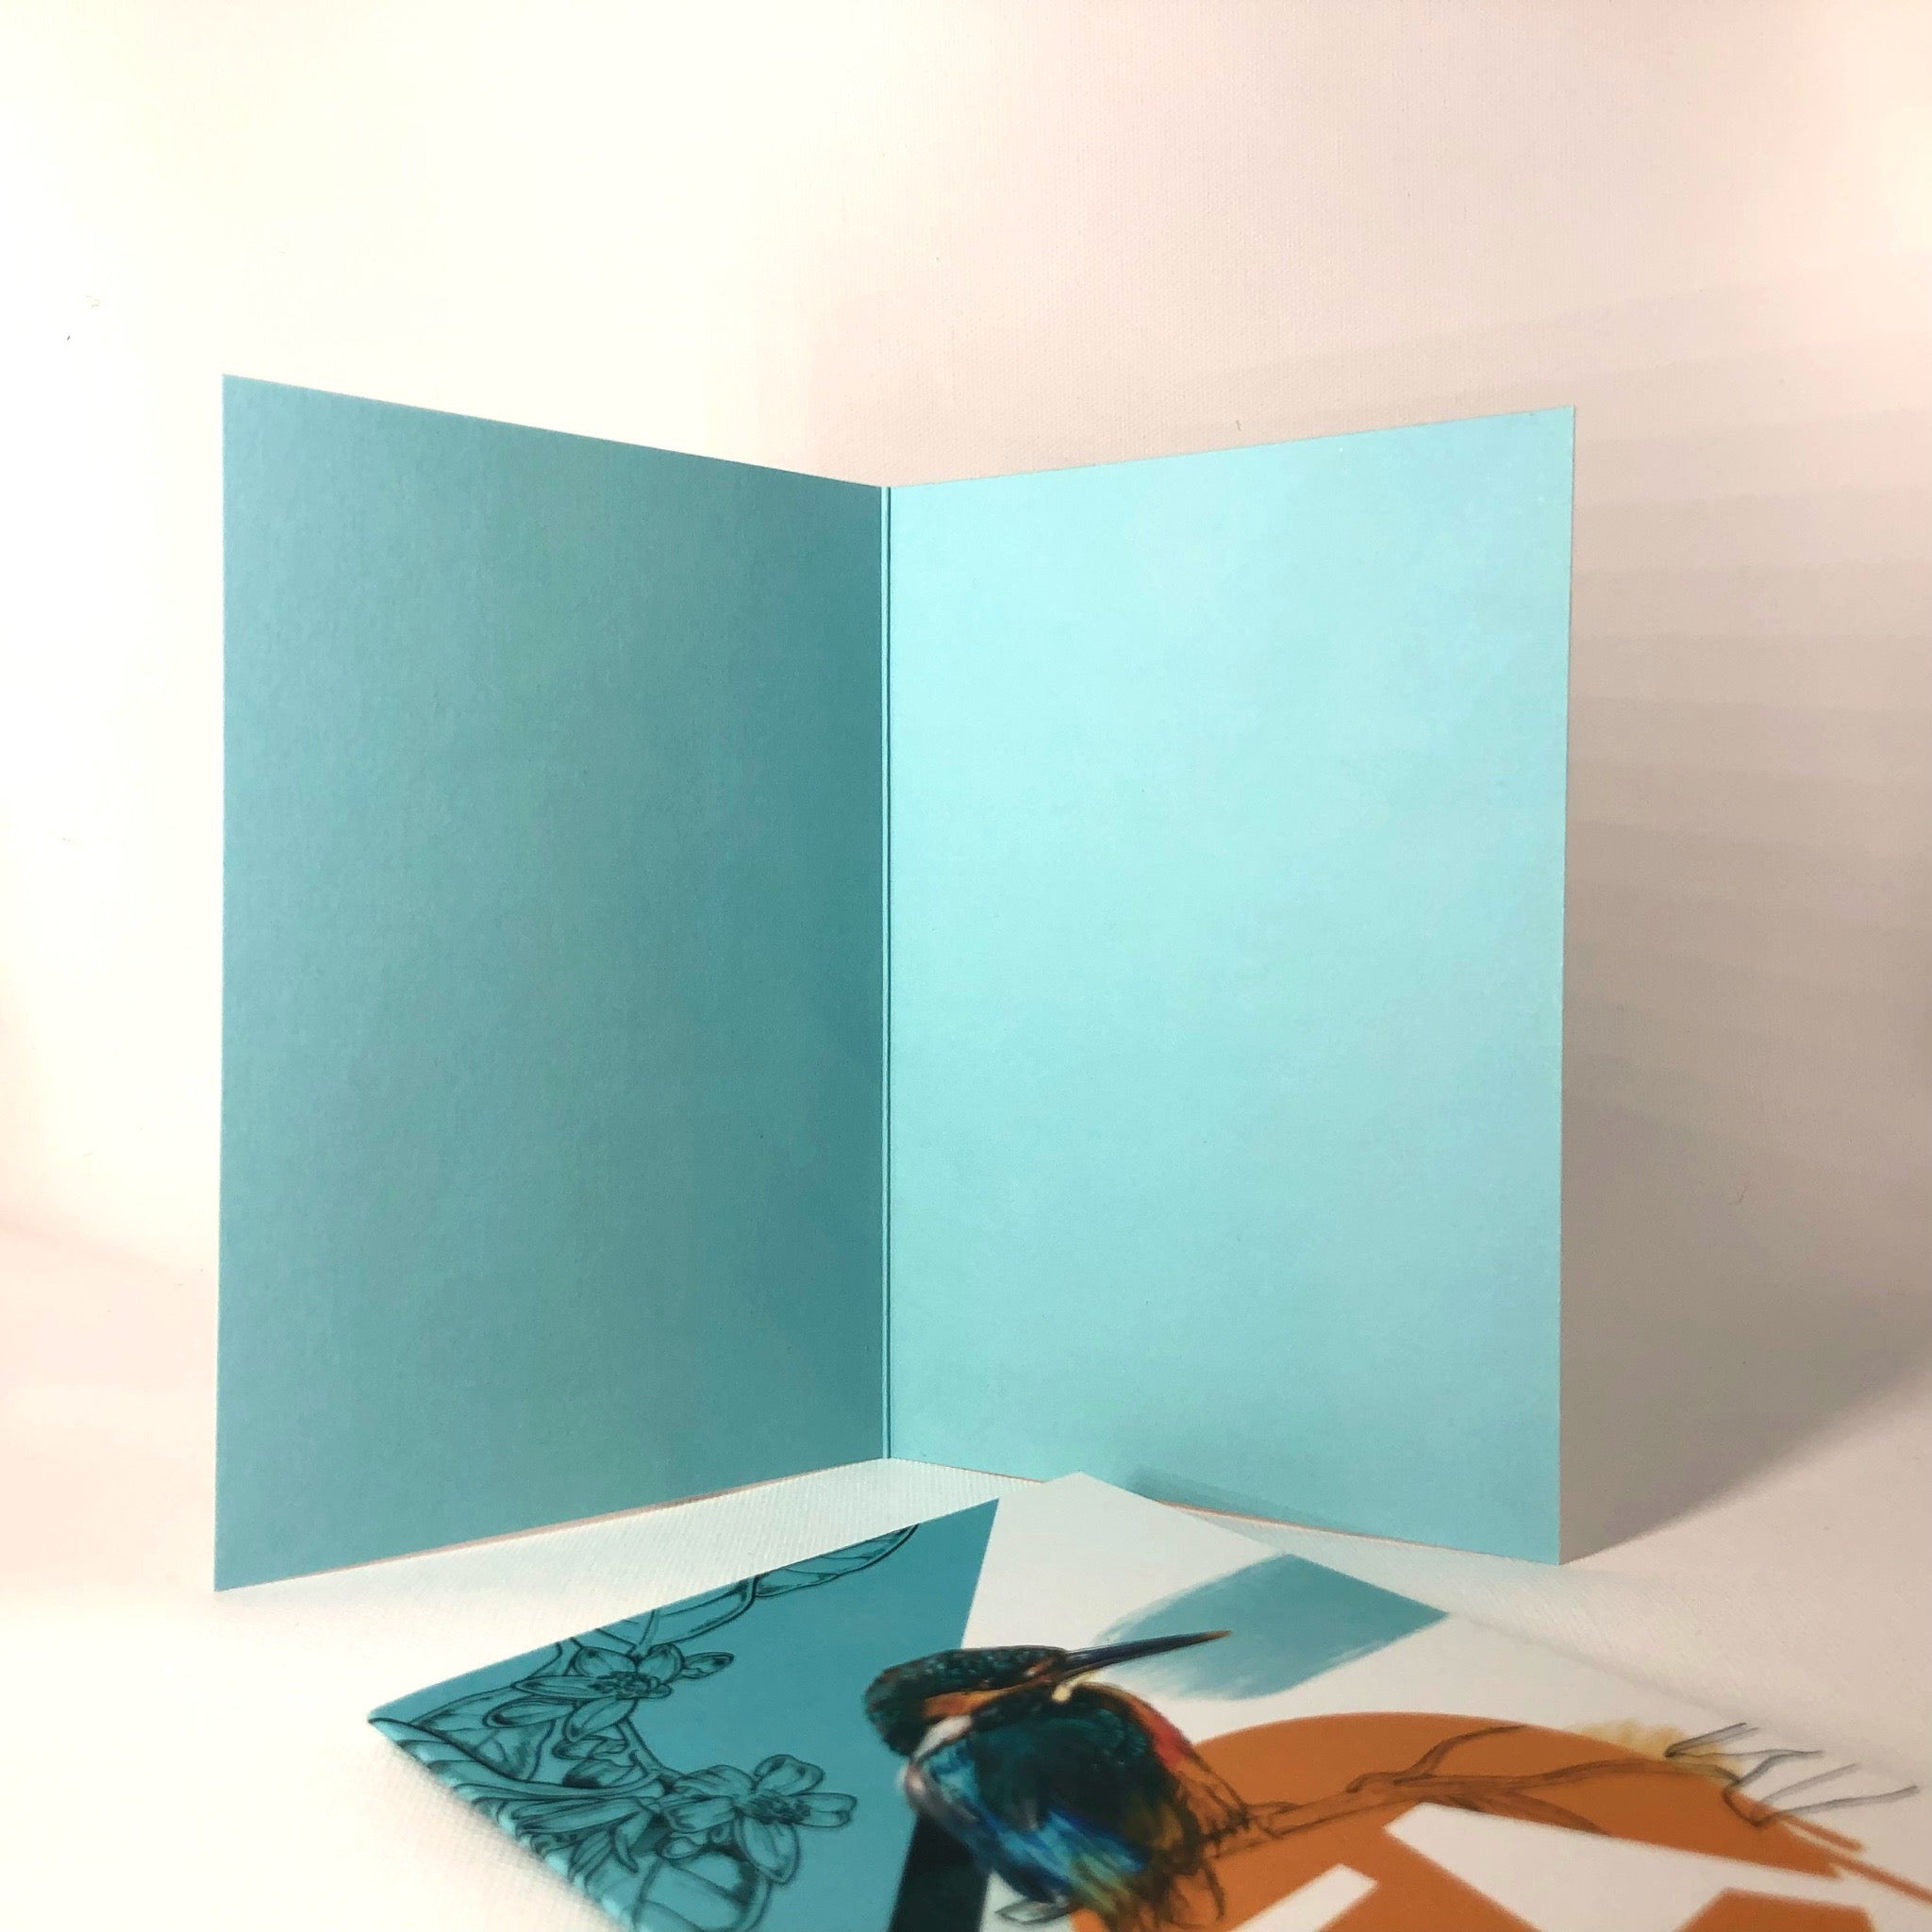 Kingfisher - Ta Greeting Card